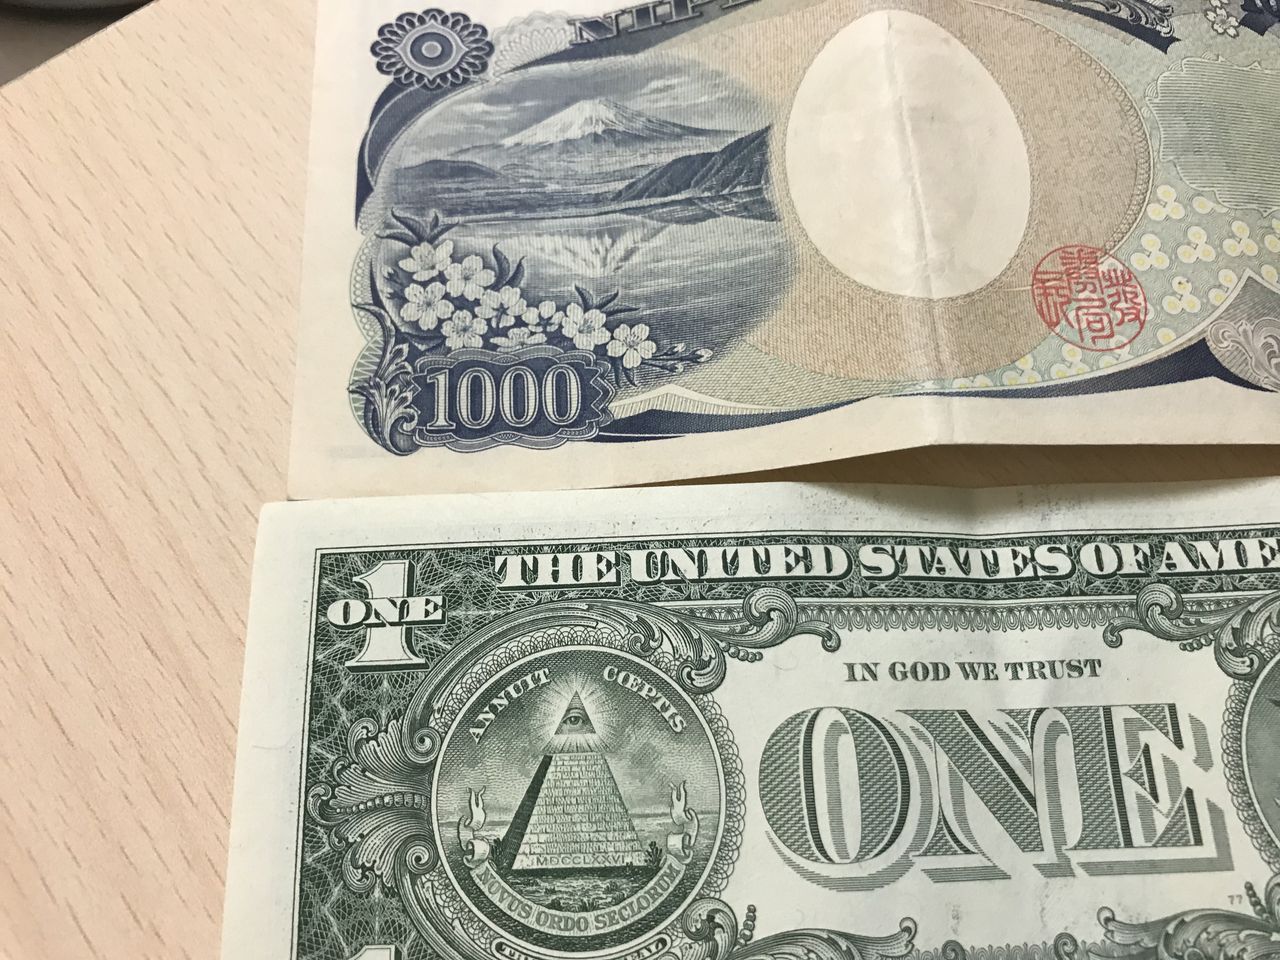 知らなかった 千円札に隠された 衝撃的な秘密 が話題に １ドル札との意外な共通点 秒刊sunday